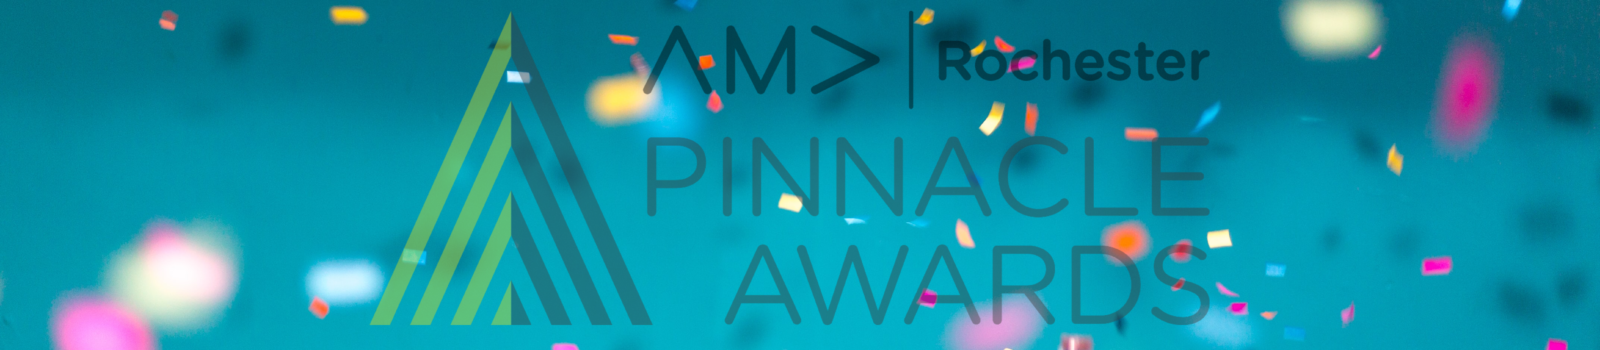 Pinnacle Finalists Awards